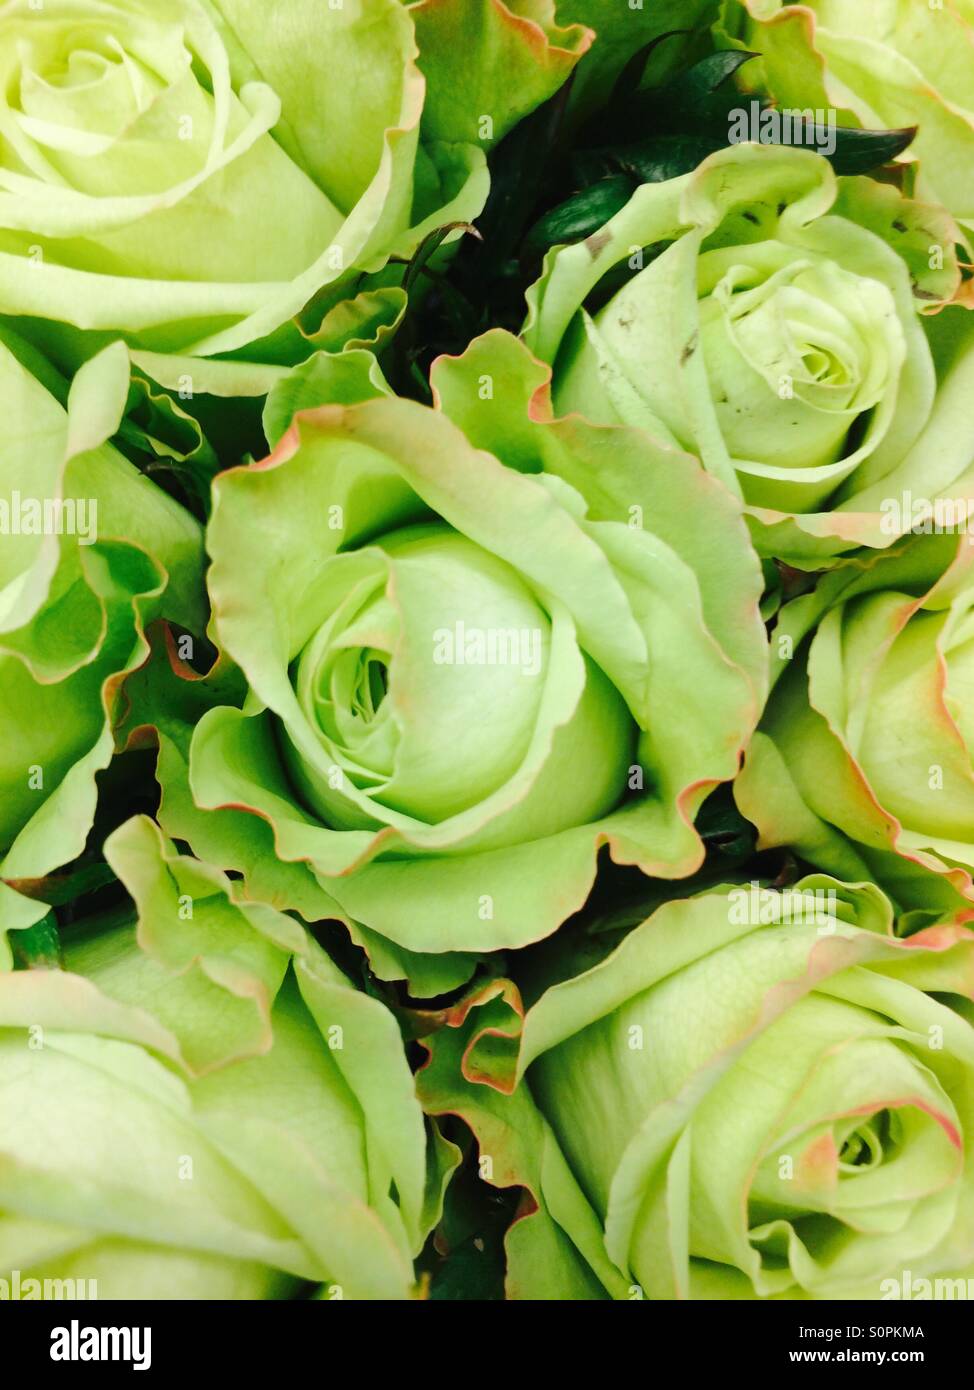 Rosa verde immagini e fotografie stock ad alta risoluzione - Alamy